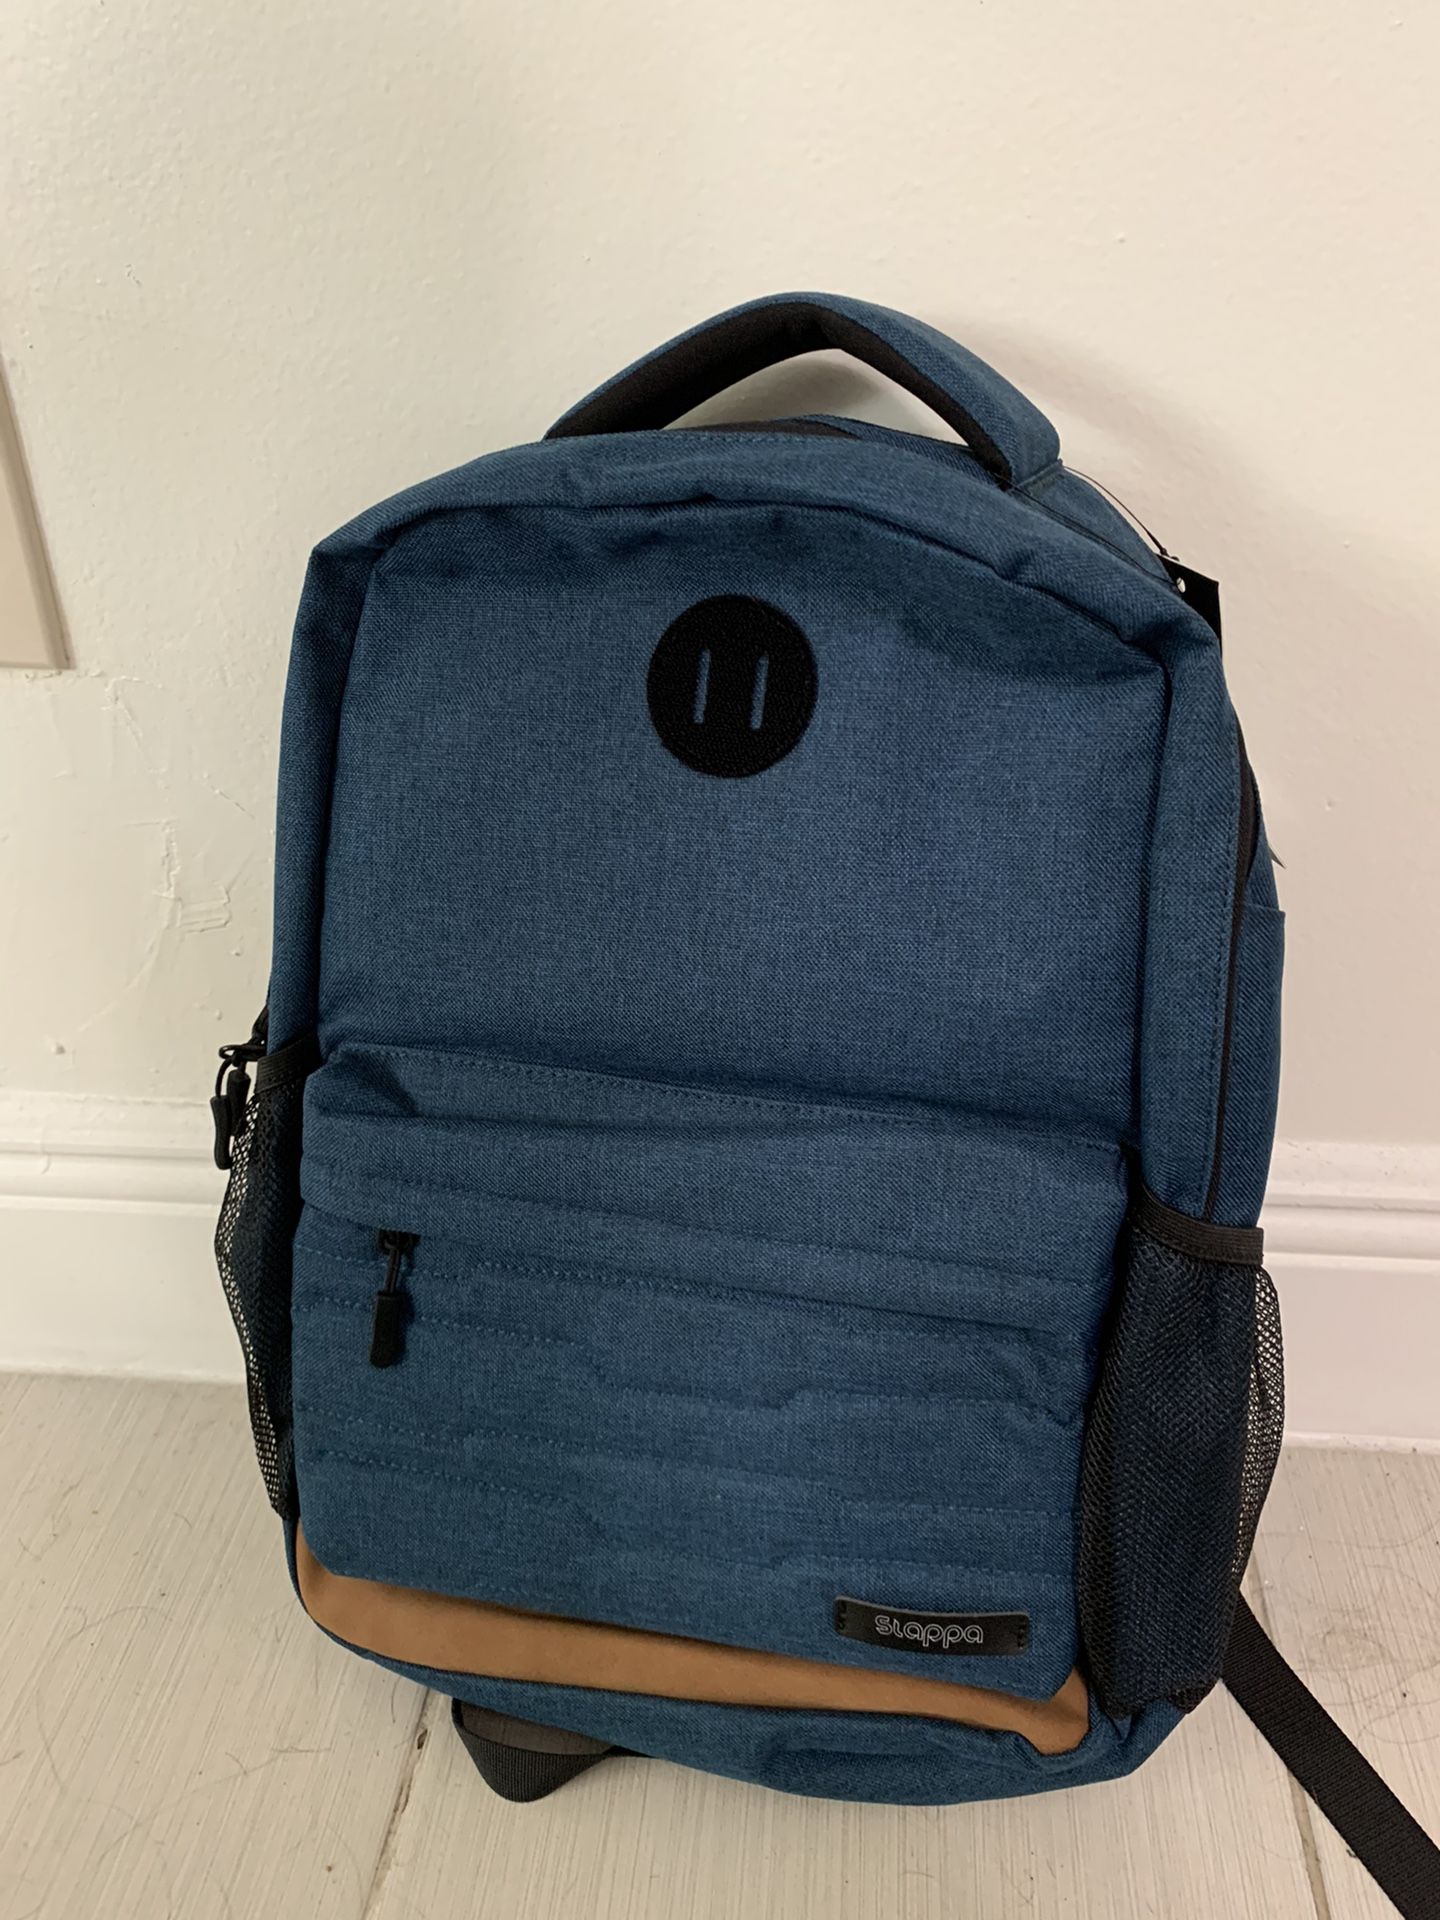 Slappa 15” laptop backpack